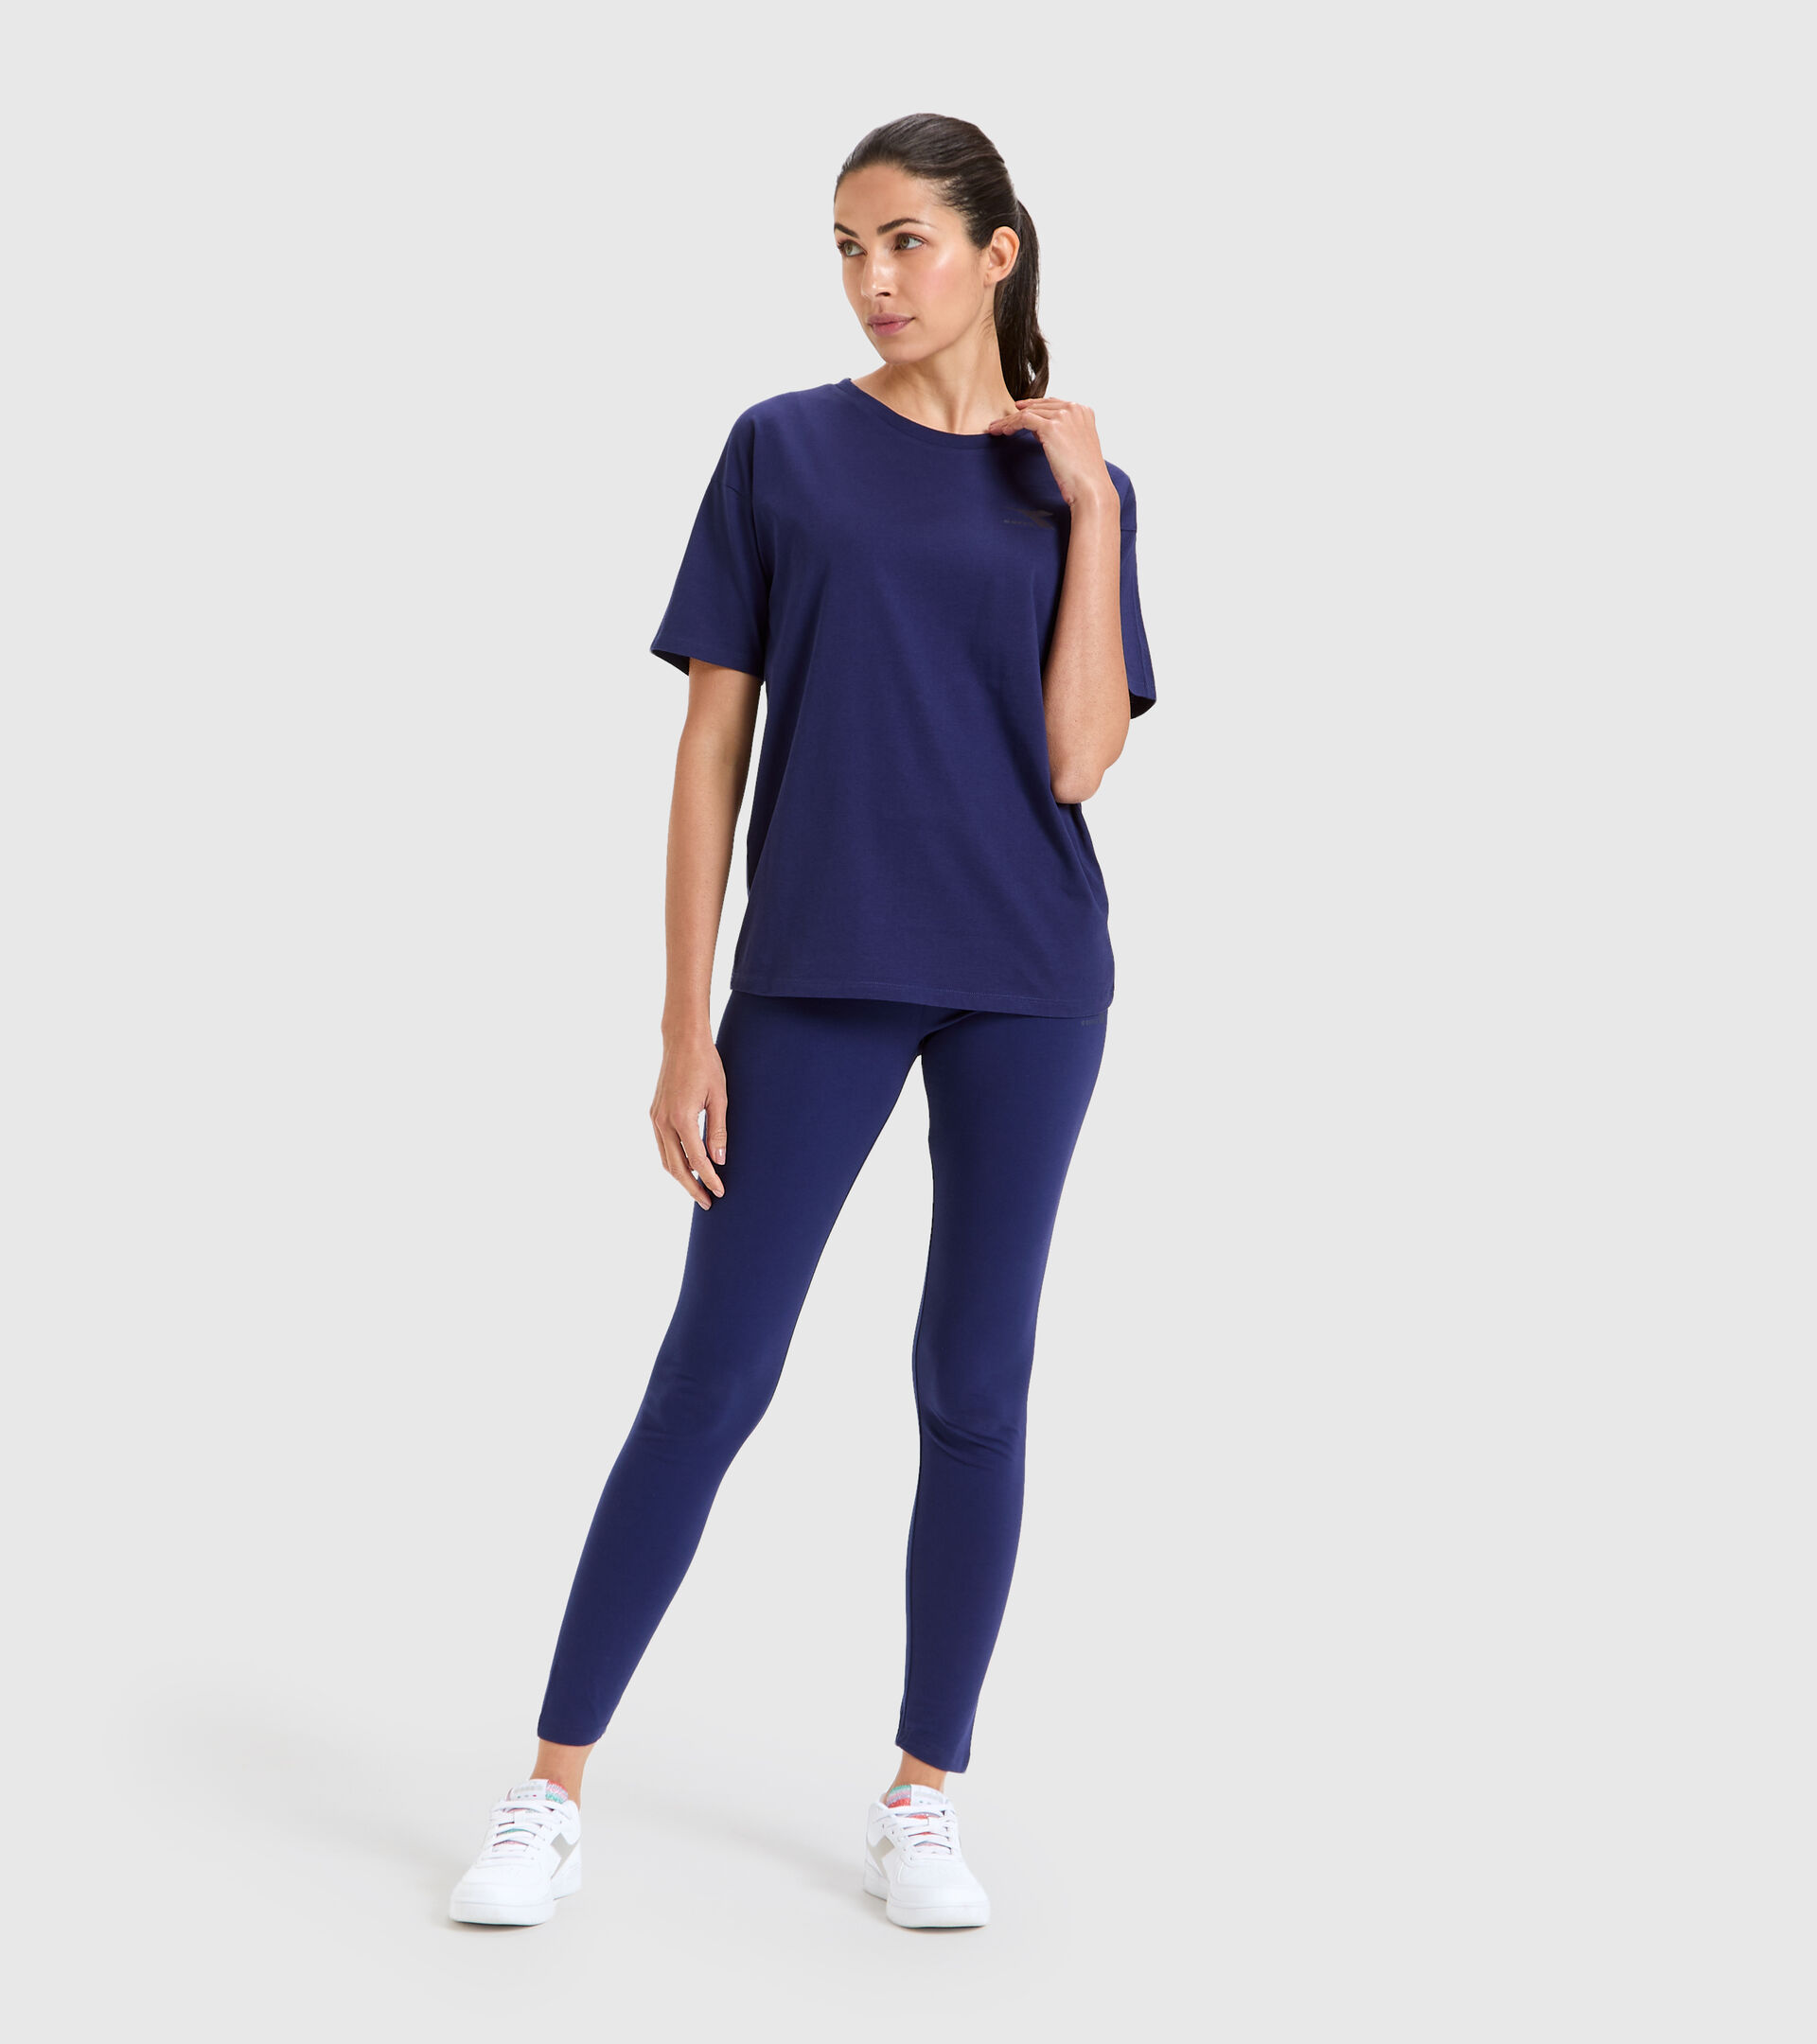 Camiseta deportiva de algodón - Mujer L.T-SHIRT SS CHROMIA PROFUNDO COBALTO - Diadora